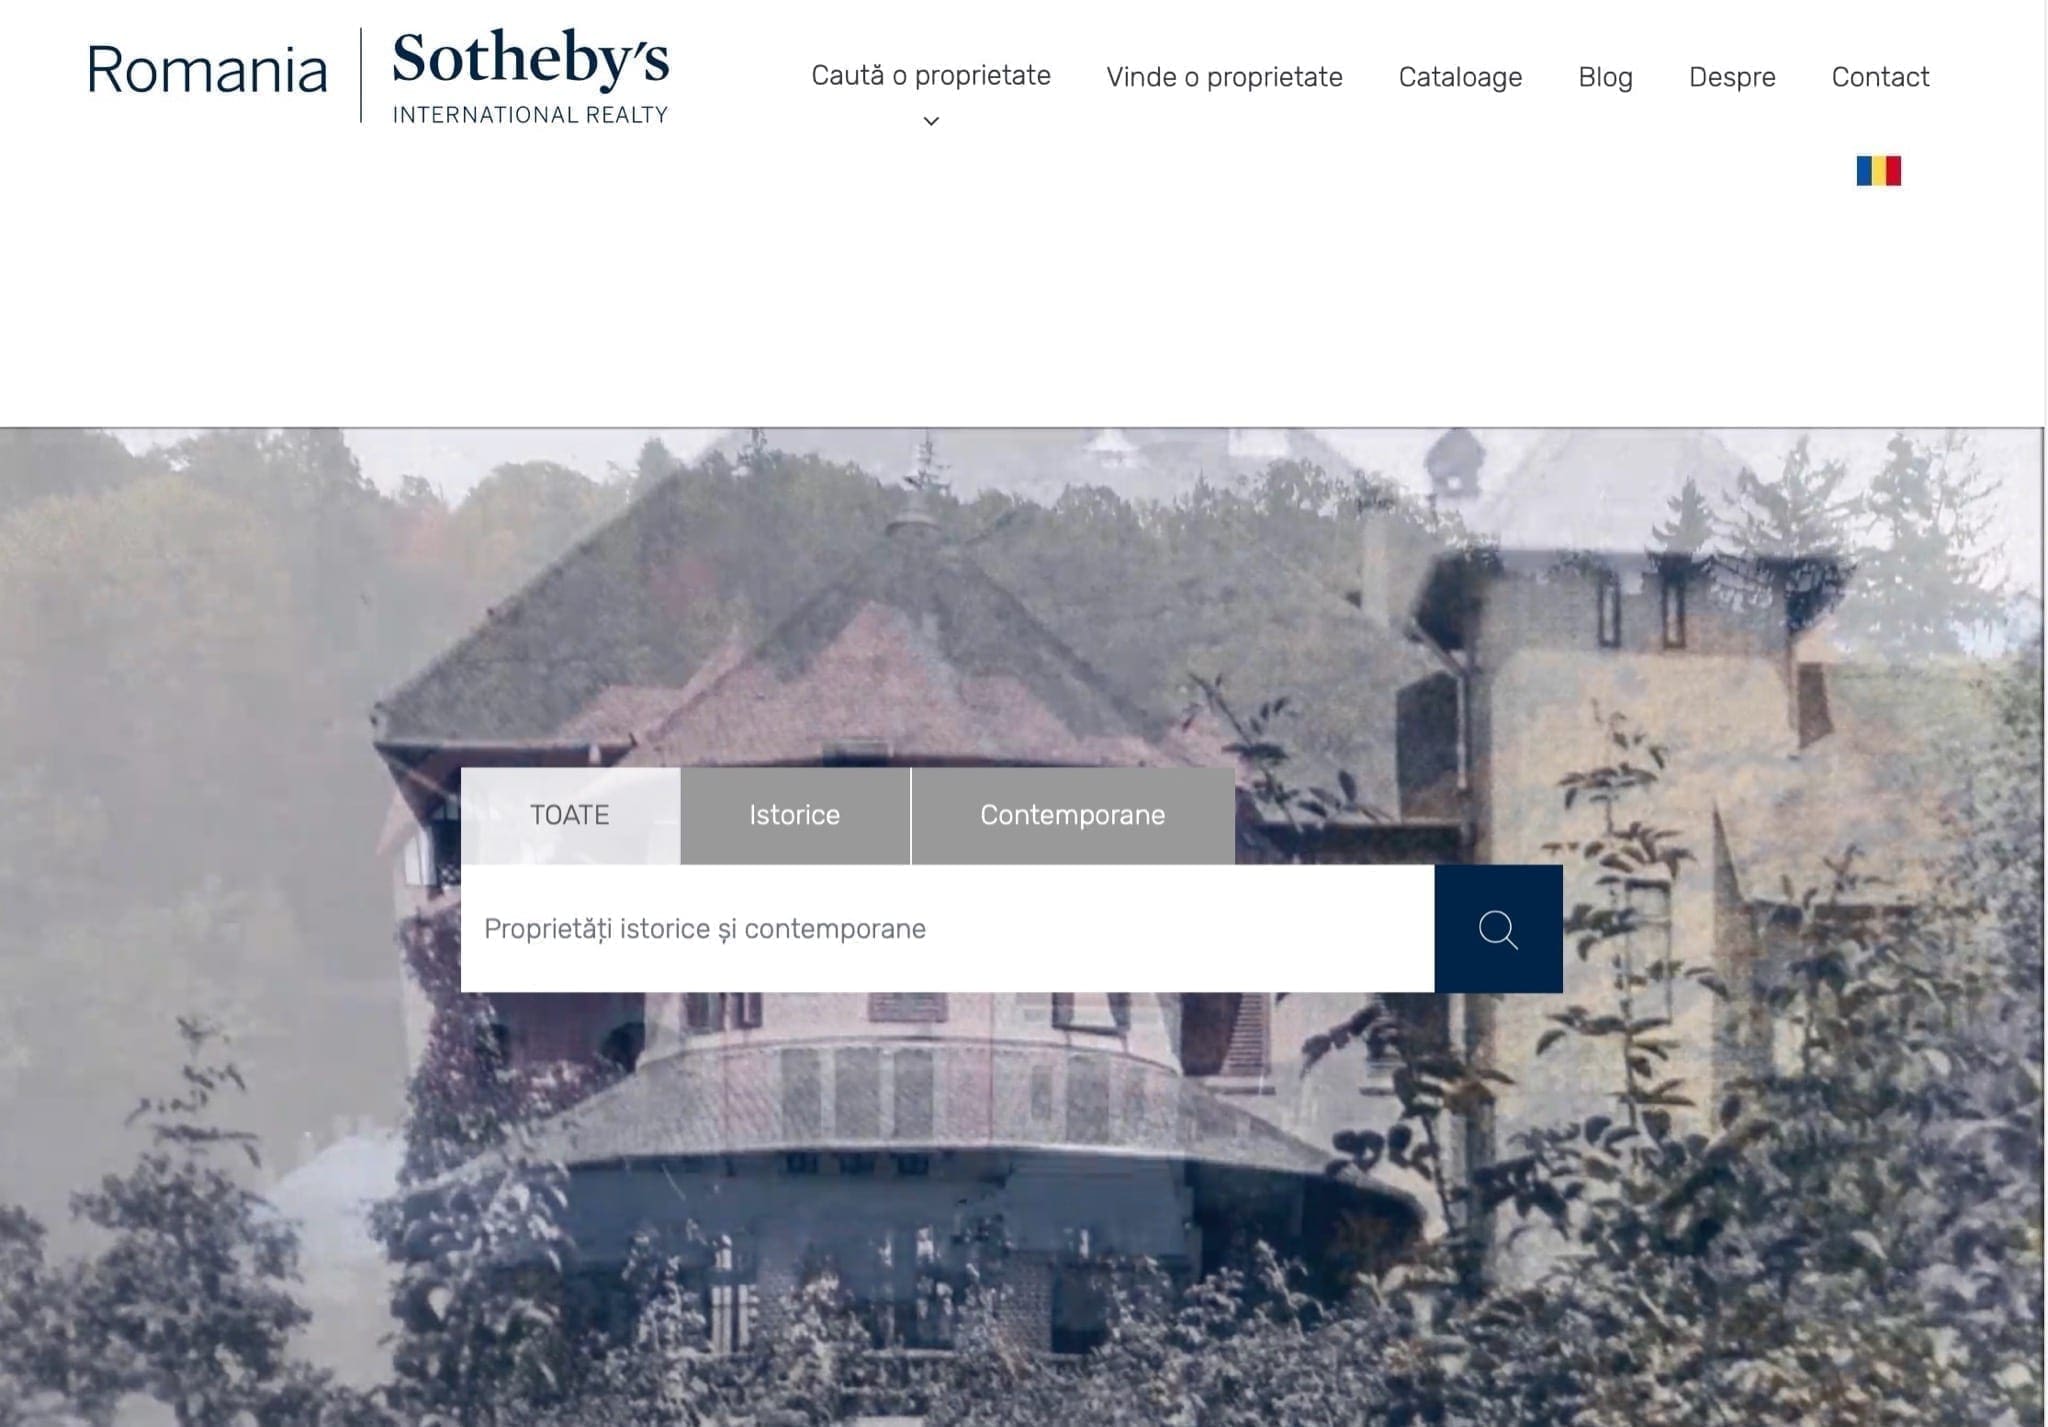 Sotheby - Sotheby’s International Realty, portofoliu de 620 de milioane de euro în România